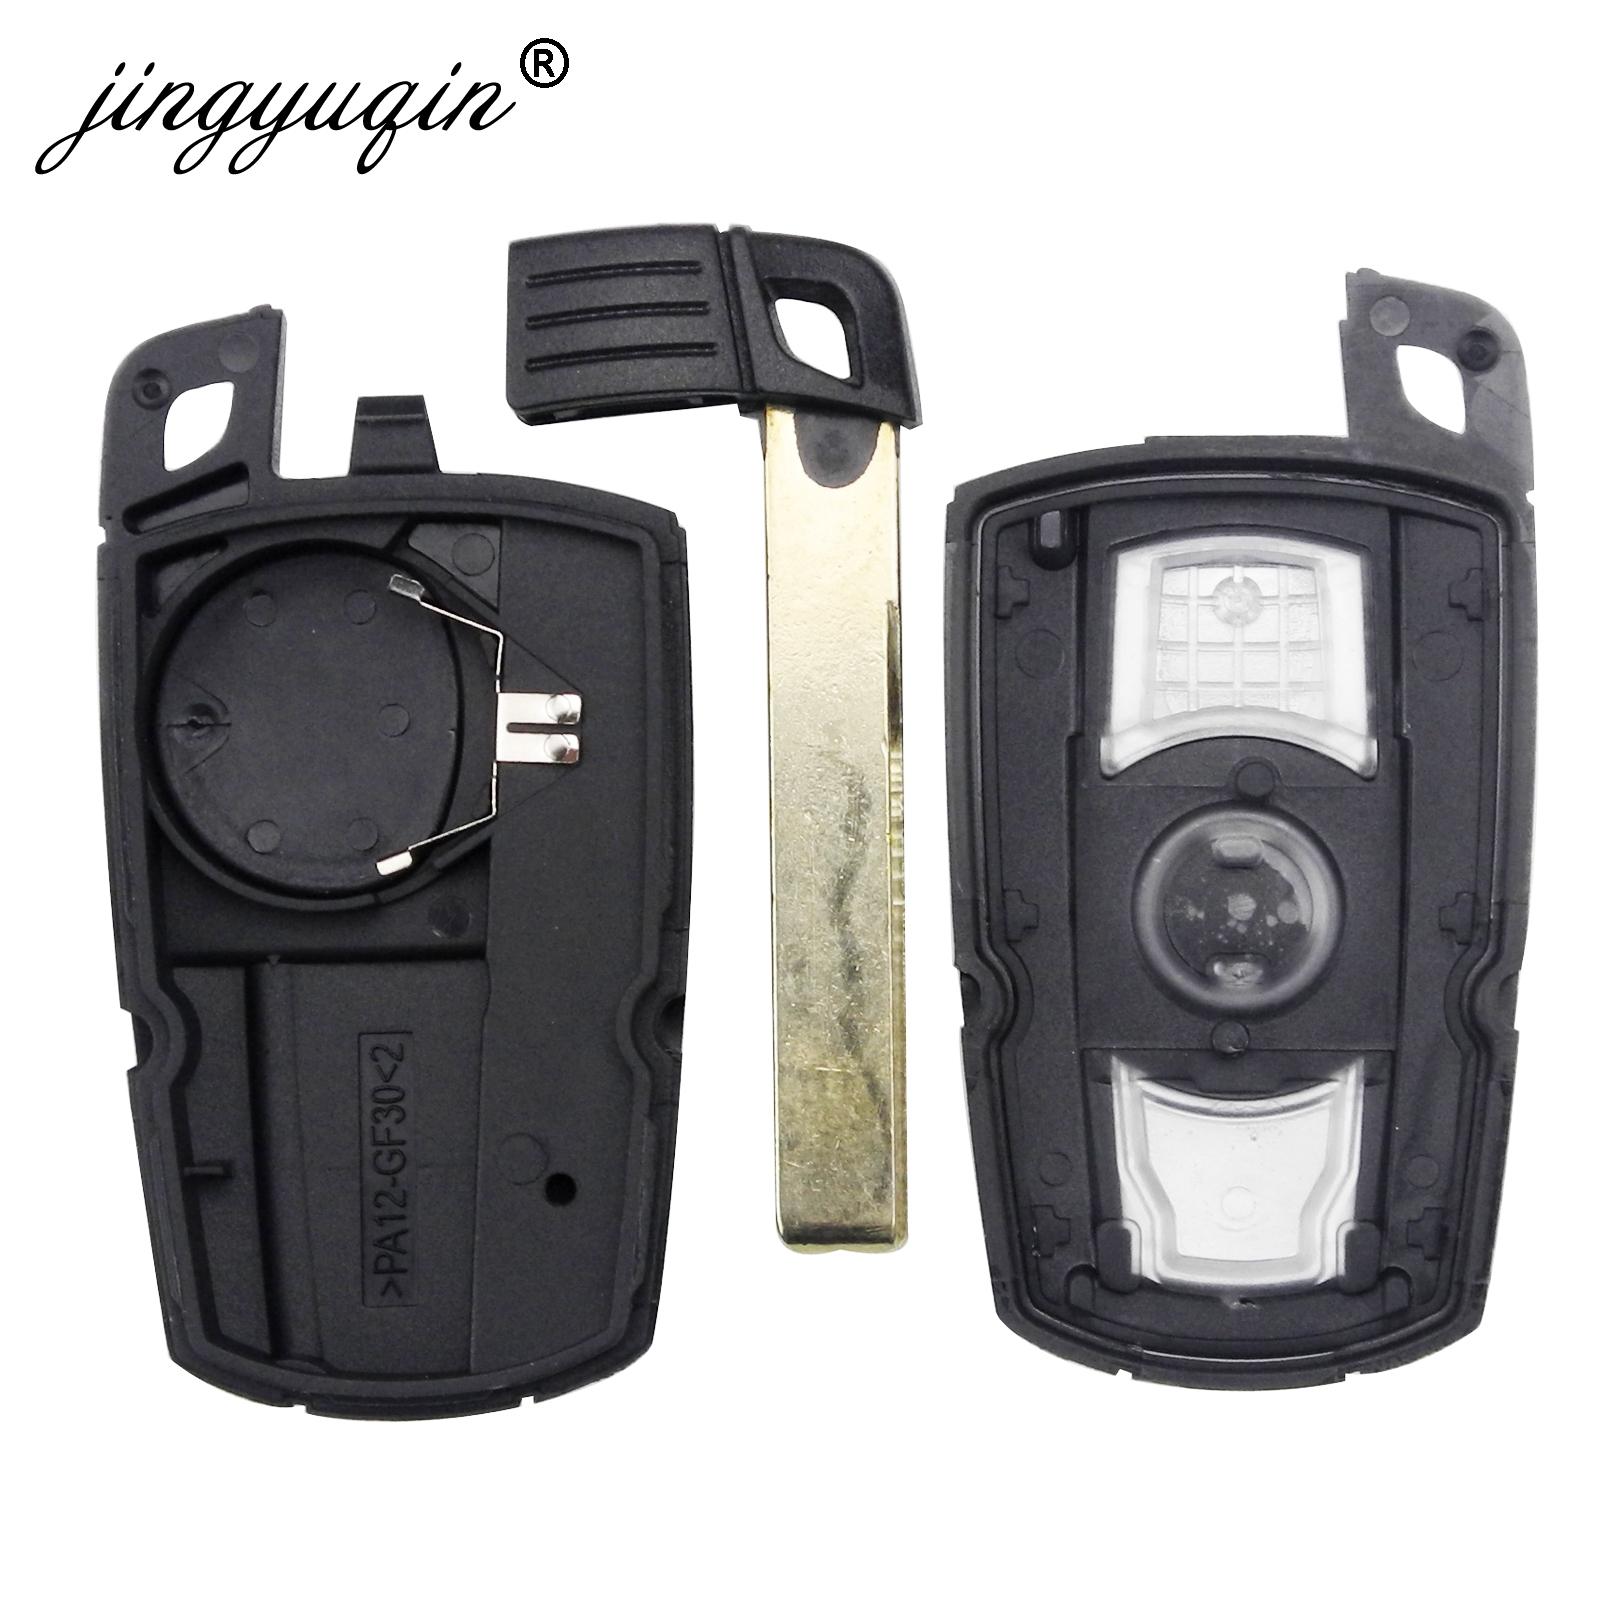 Изображение товара: Jingyuqin 3/4 кнопка дистанционного смарт-ключа чехол Корпус для BMW 1 3 5 6 7 F серии E90 E91 E92 E60 E61 X1 X3 X4 X5 X6 чехол для ключей